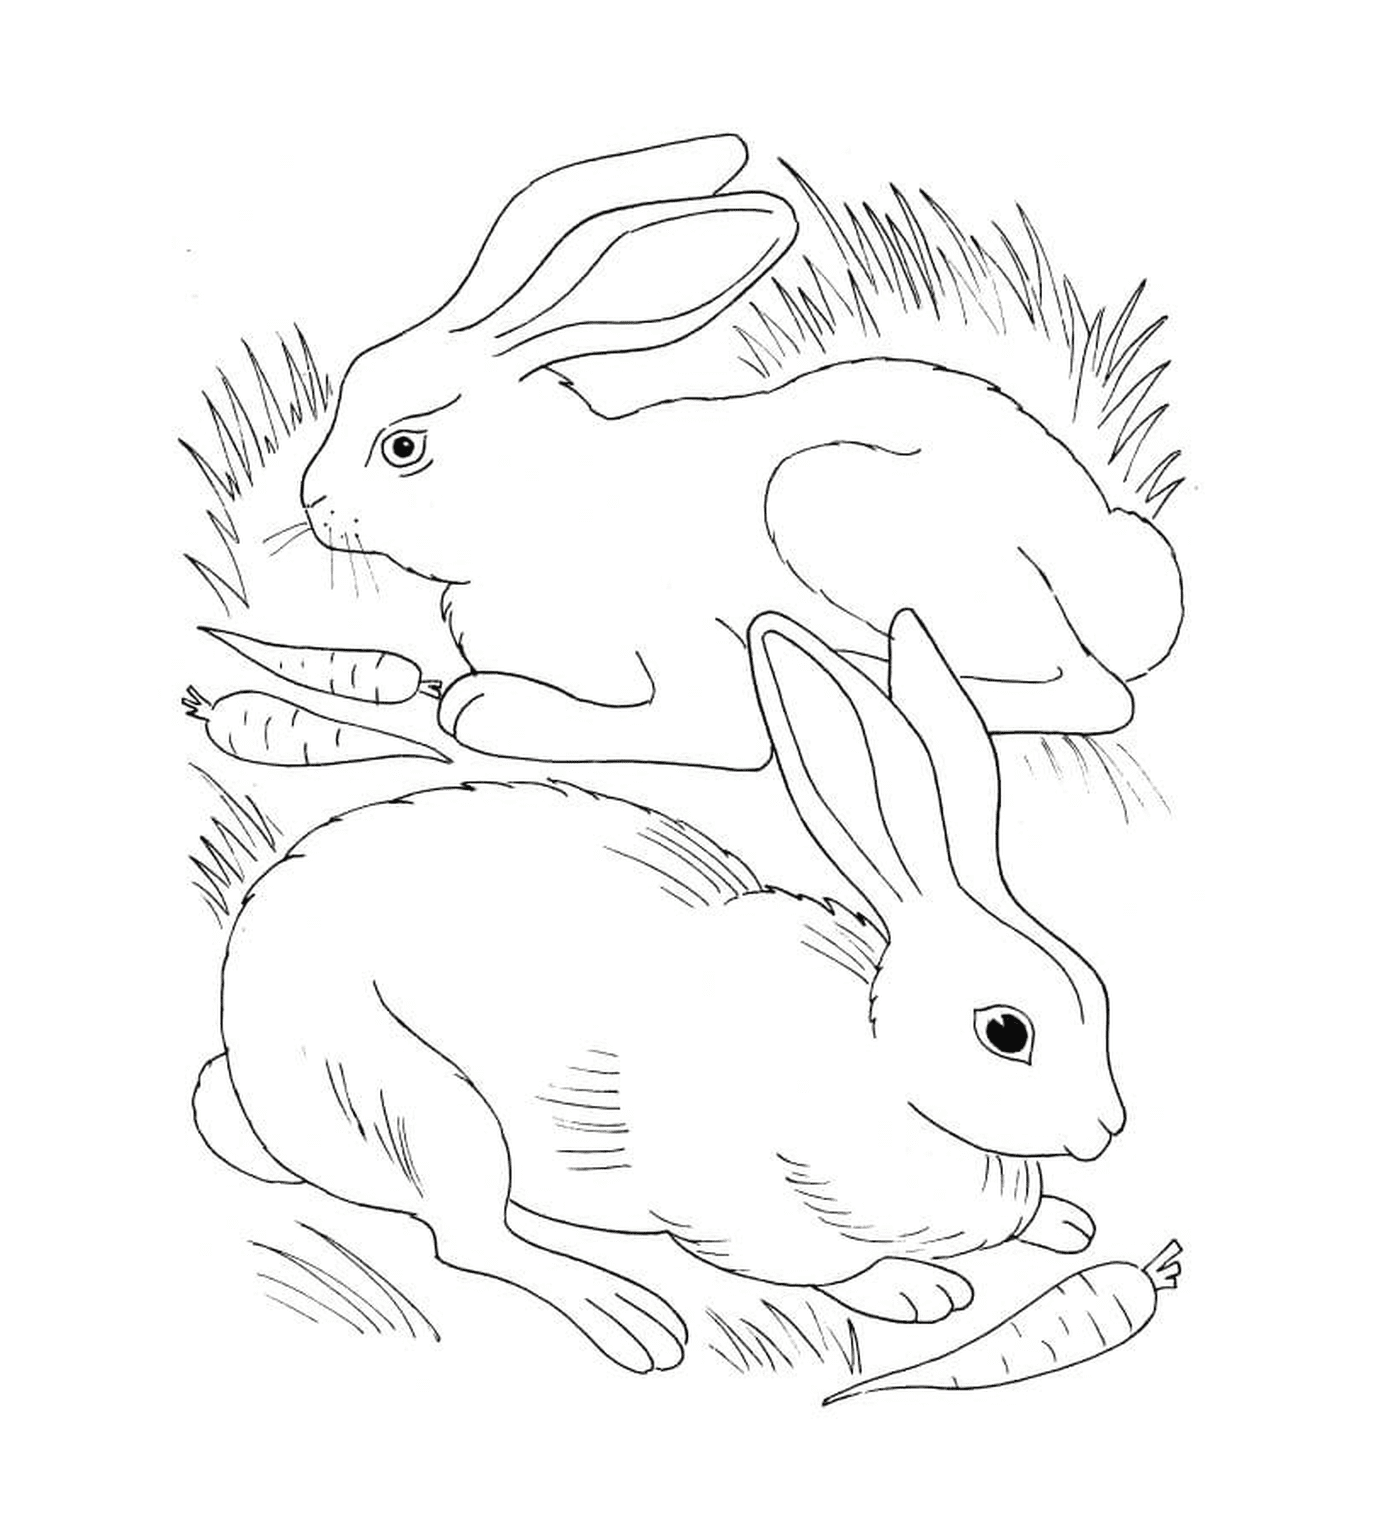  Conejo y conejo comiendo zanahorias 